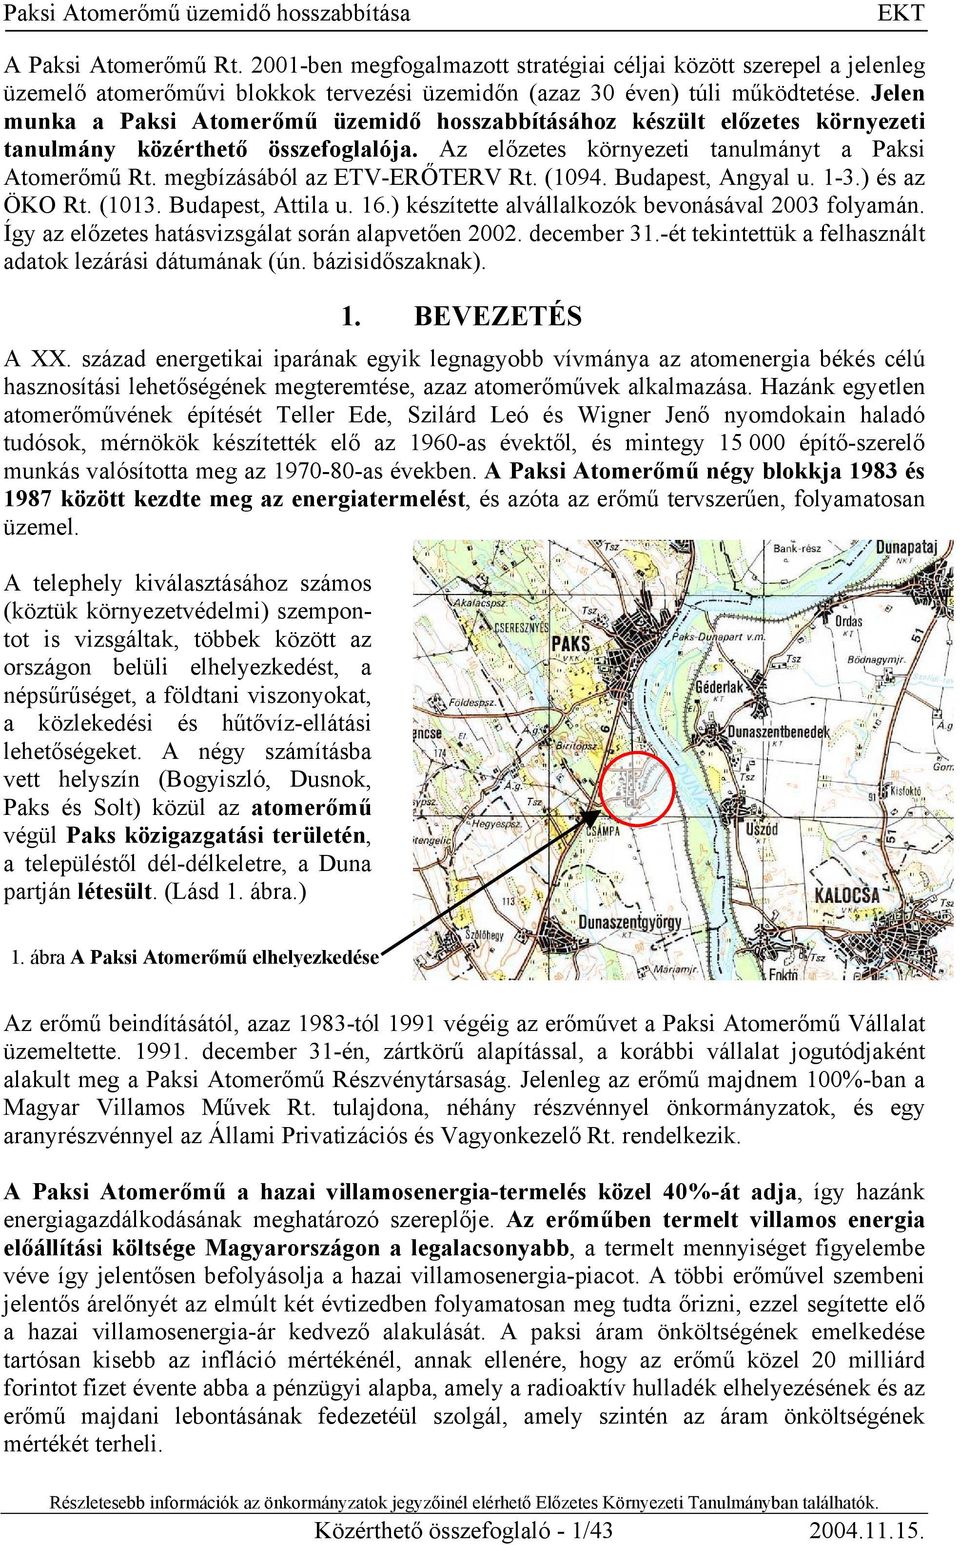 megbízásából az ETV-ERŐTERV Rt. (1094. Budapest, Angyal u. 1-3.) és az ÖKO Rt. (1013. Budapest, Attila u. 16.) készítette alvállalkozók bevonásával 2003 folyamán.